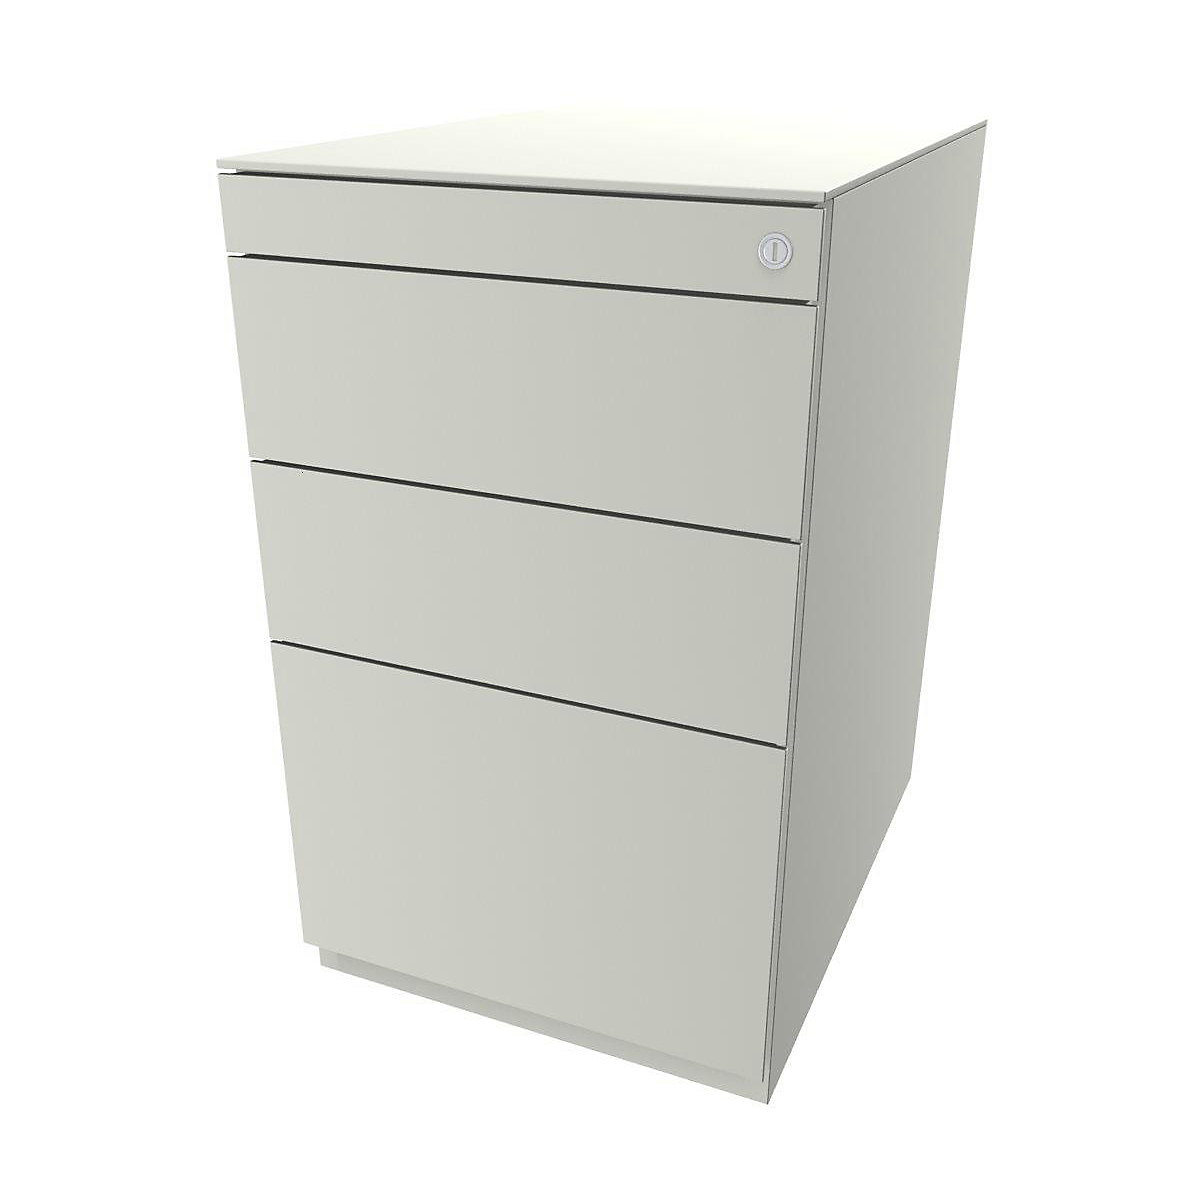 Stojaci kontajner Note™, s 2 univerzálnymi zásuvkami, 1 závesná registratúra – BISLEY, s hornou doskou 565 mm, čistá biela-9